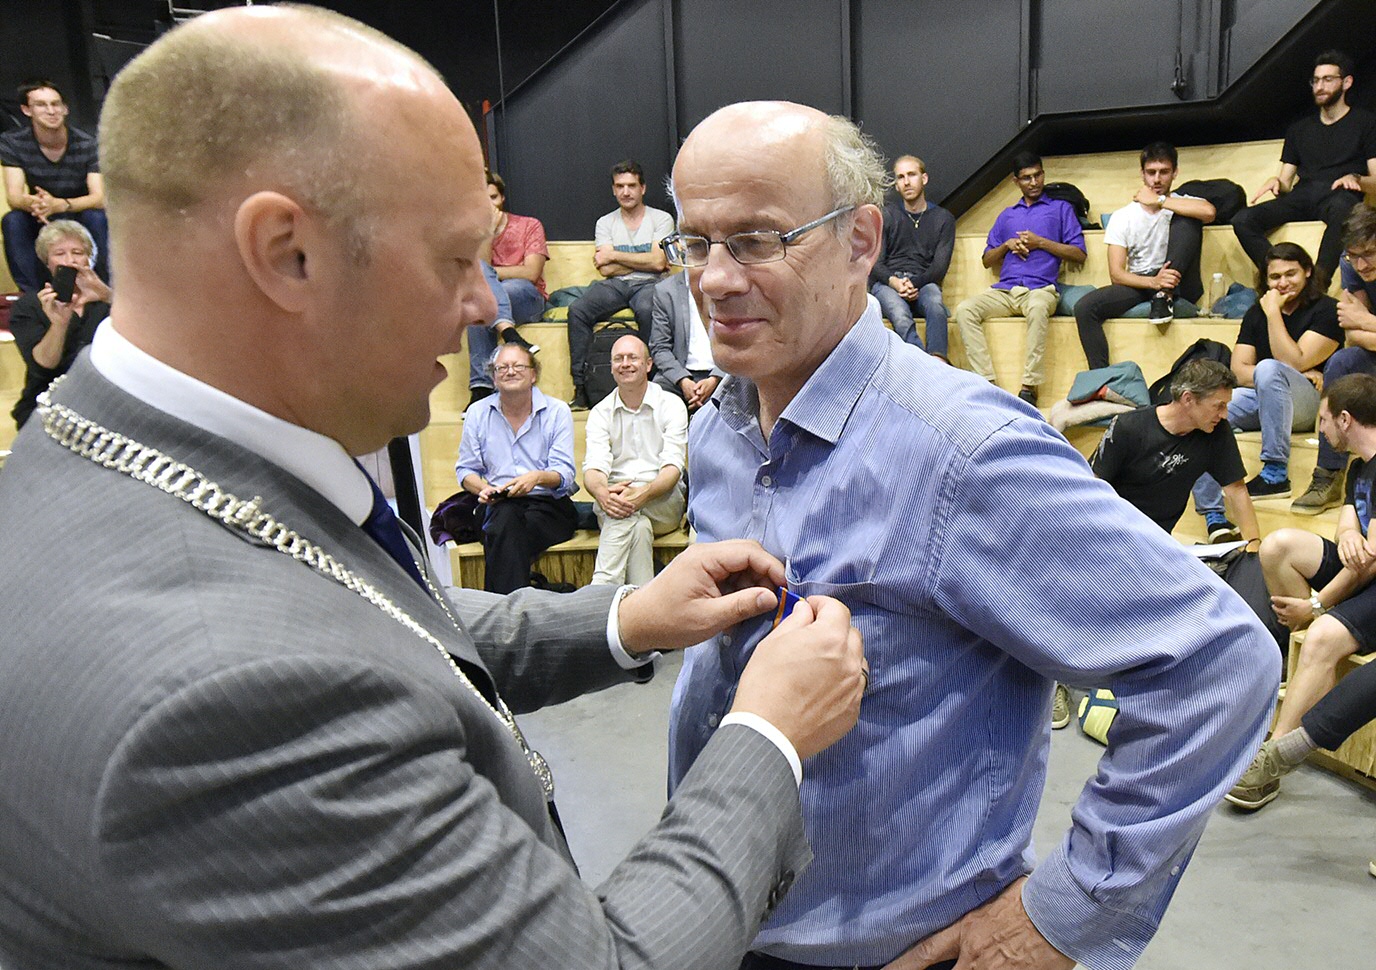 Prof. Eric Bergshoeff awarded during the Scanning New Horizons Symposium